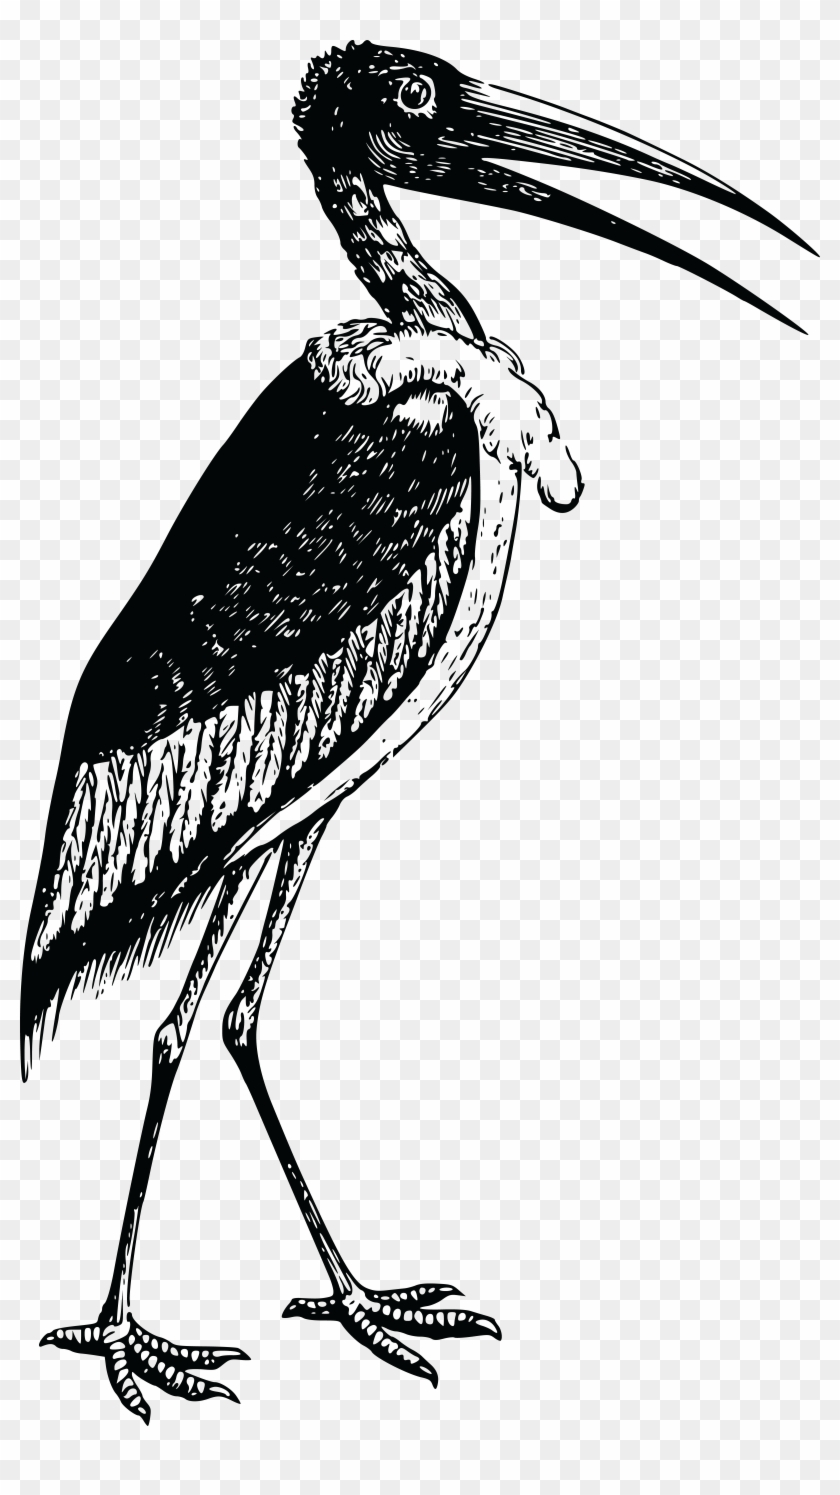 Free Clipart Of A Stork - Bird #488426